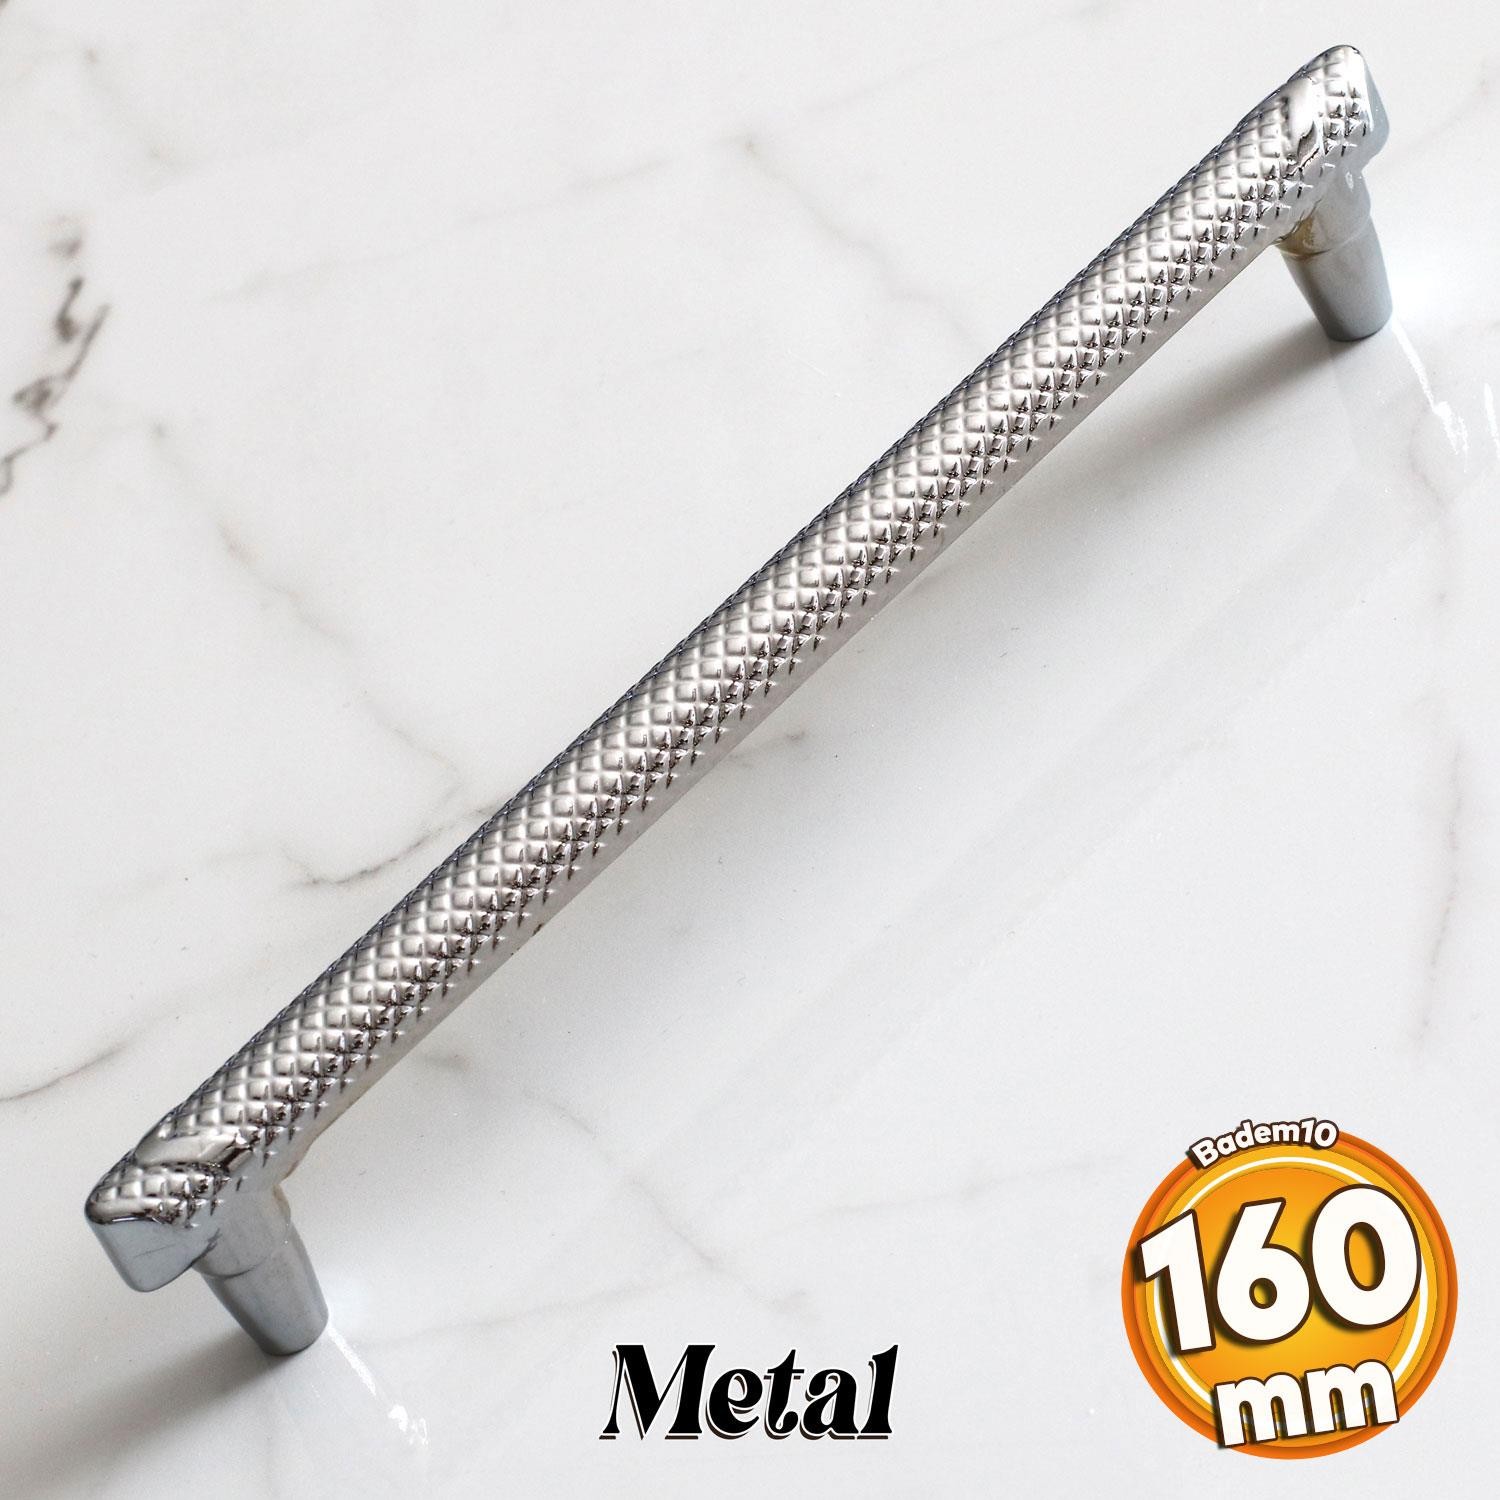 Dekor 160 mm Krom Metal Kulp Mobilya Çekmece Mutfak Dolabı Dolap Kapak Kulpları Kulbu Kulpu 16 cm